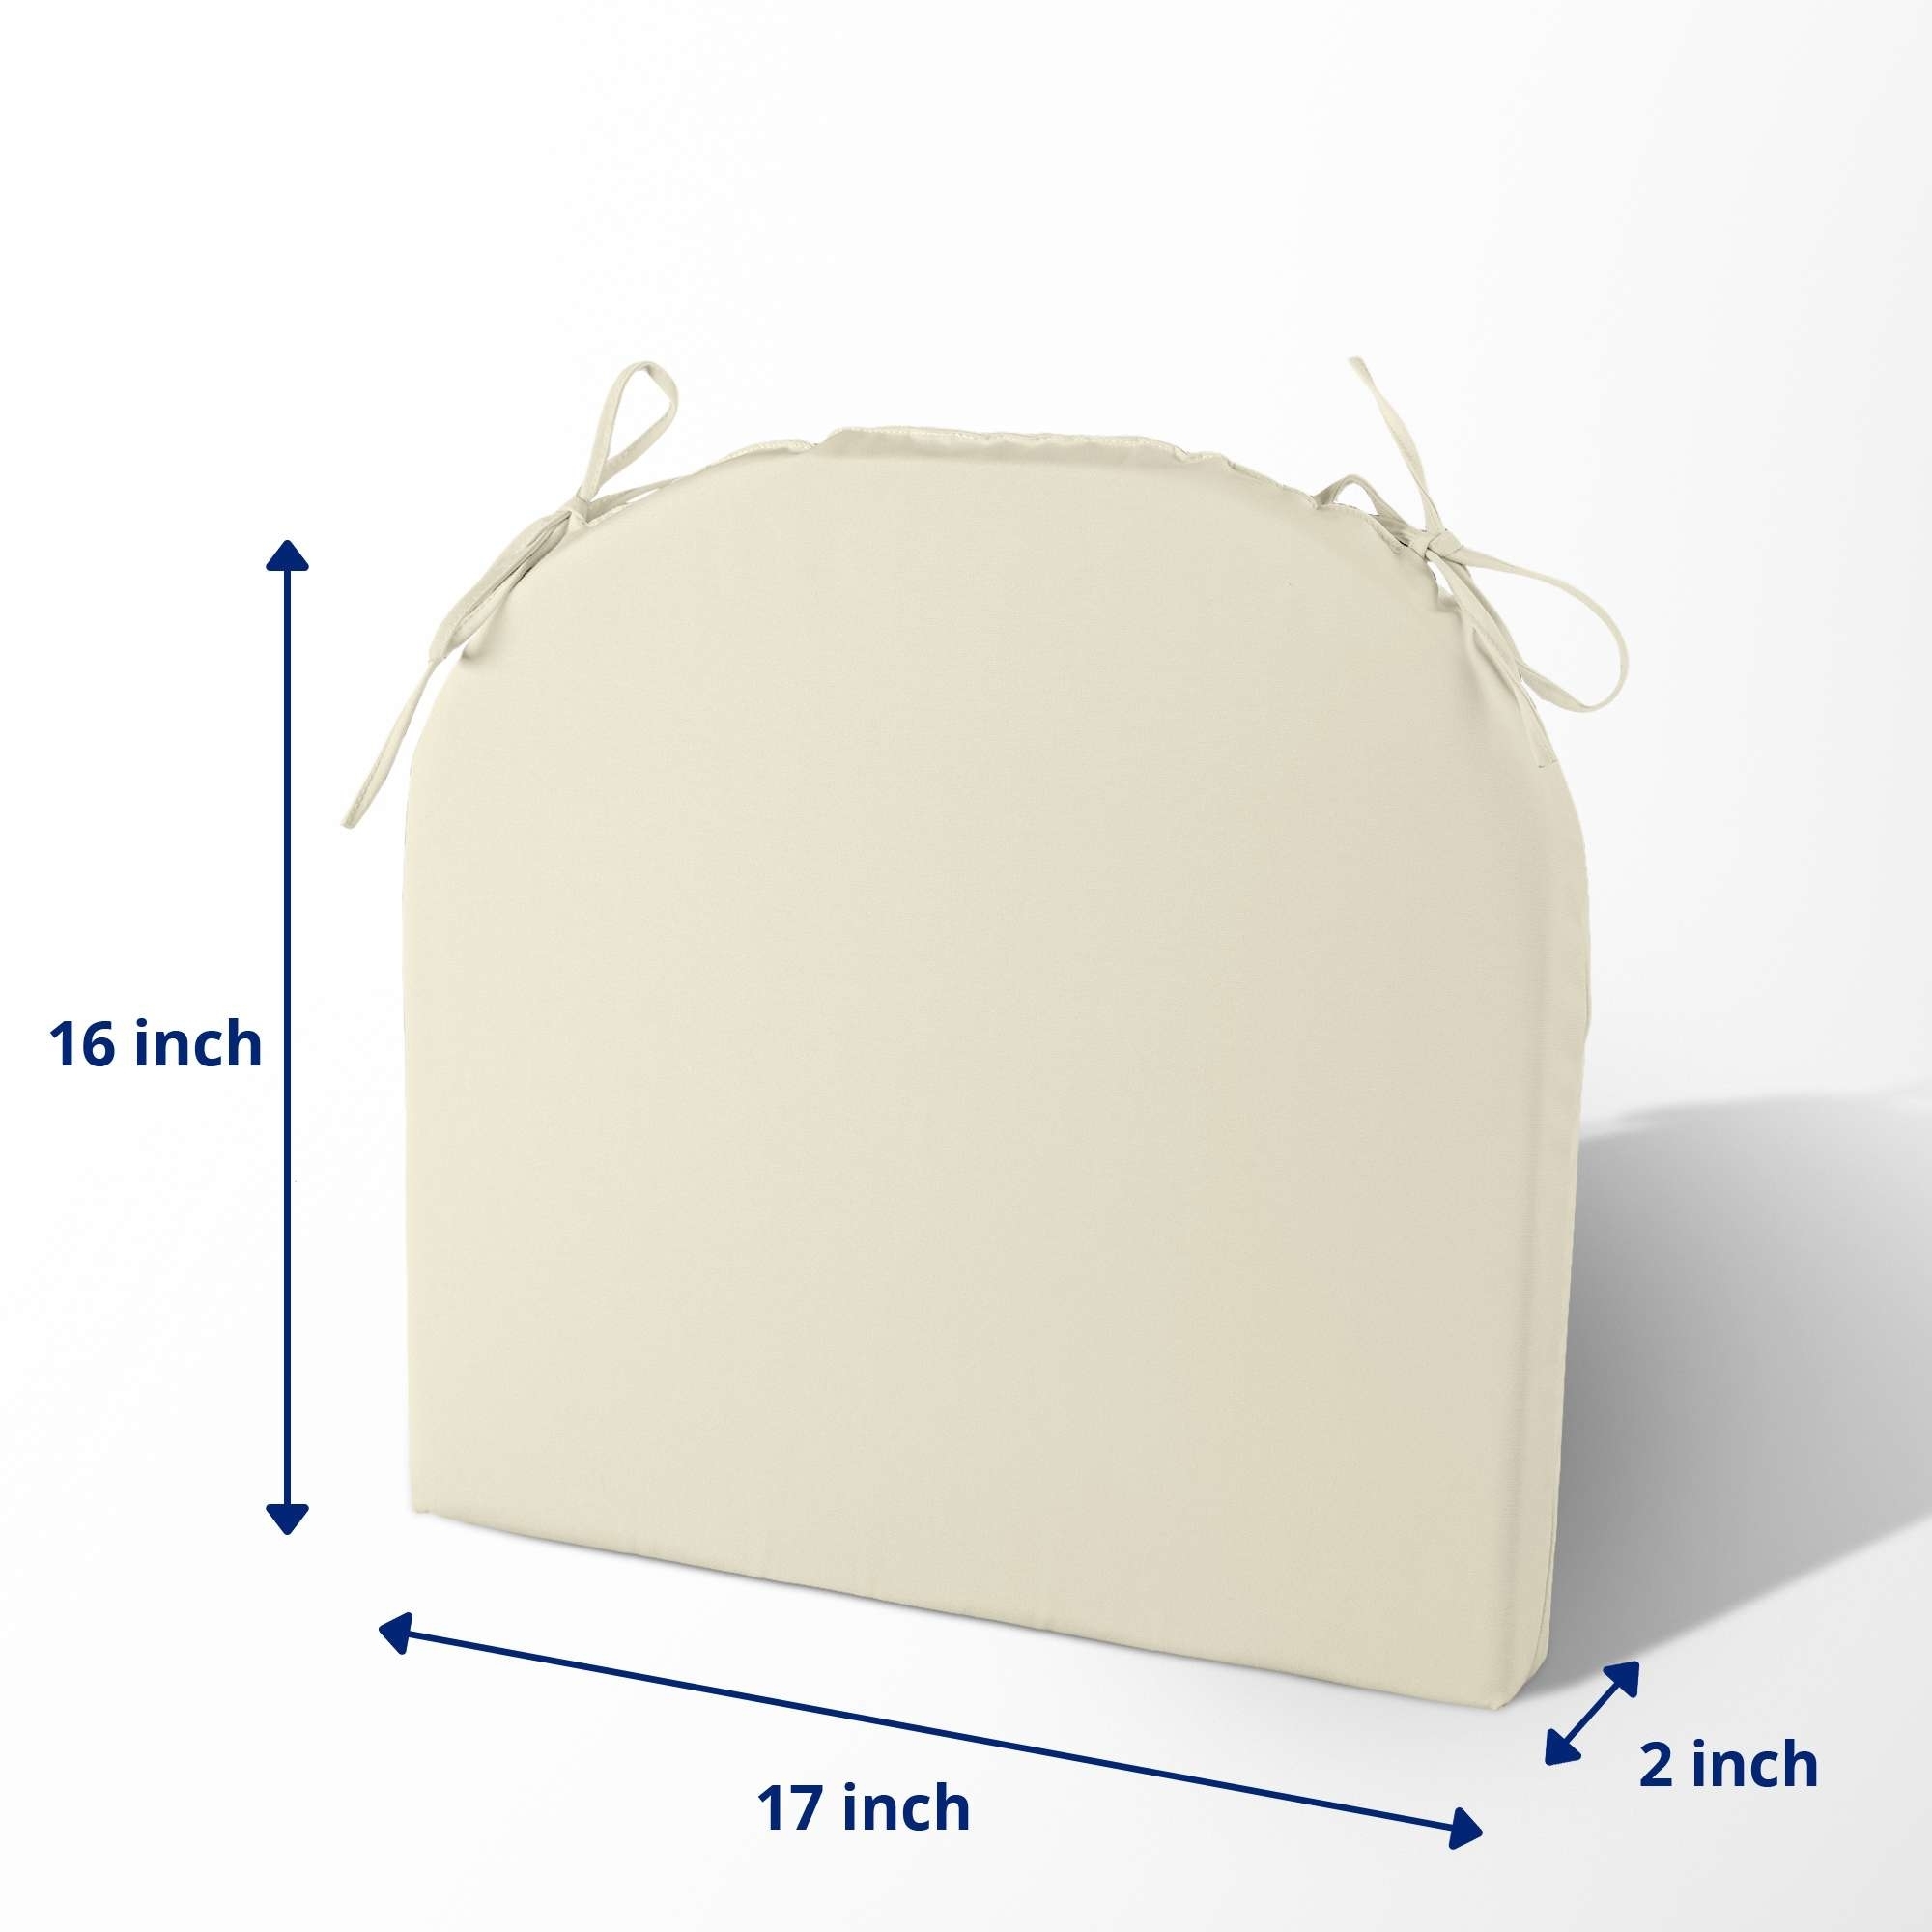 4 Pack Waterproof Ourdoor Seat Cushions High Density Foam Chair Pads With Ties - Beige, Square Corner